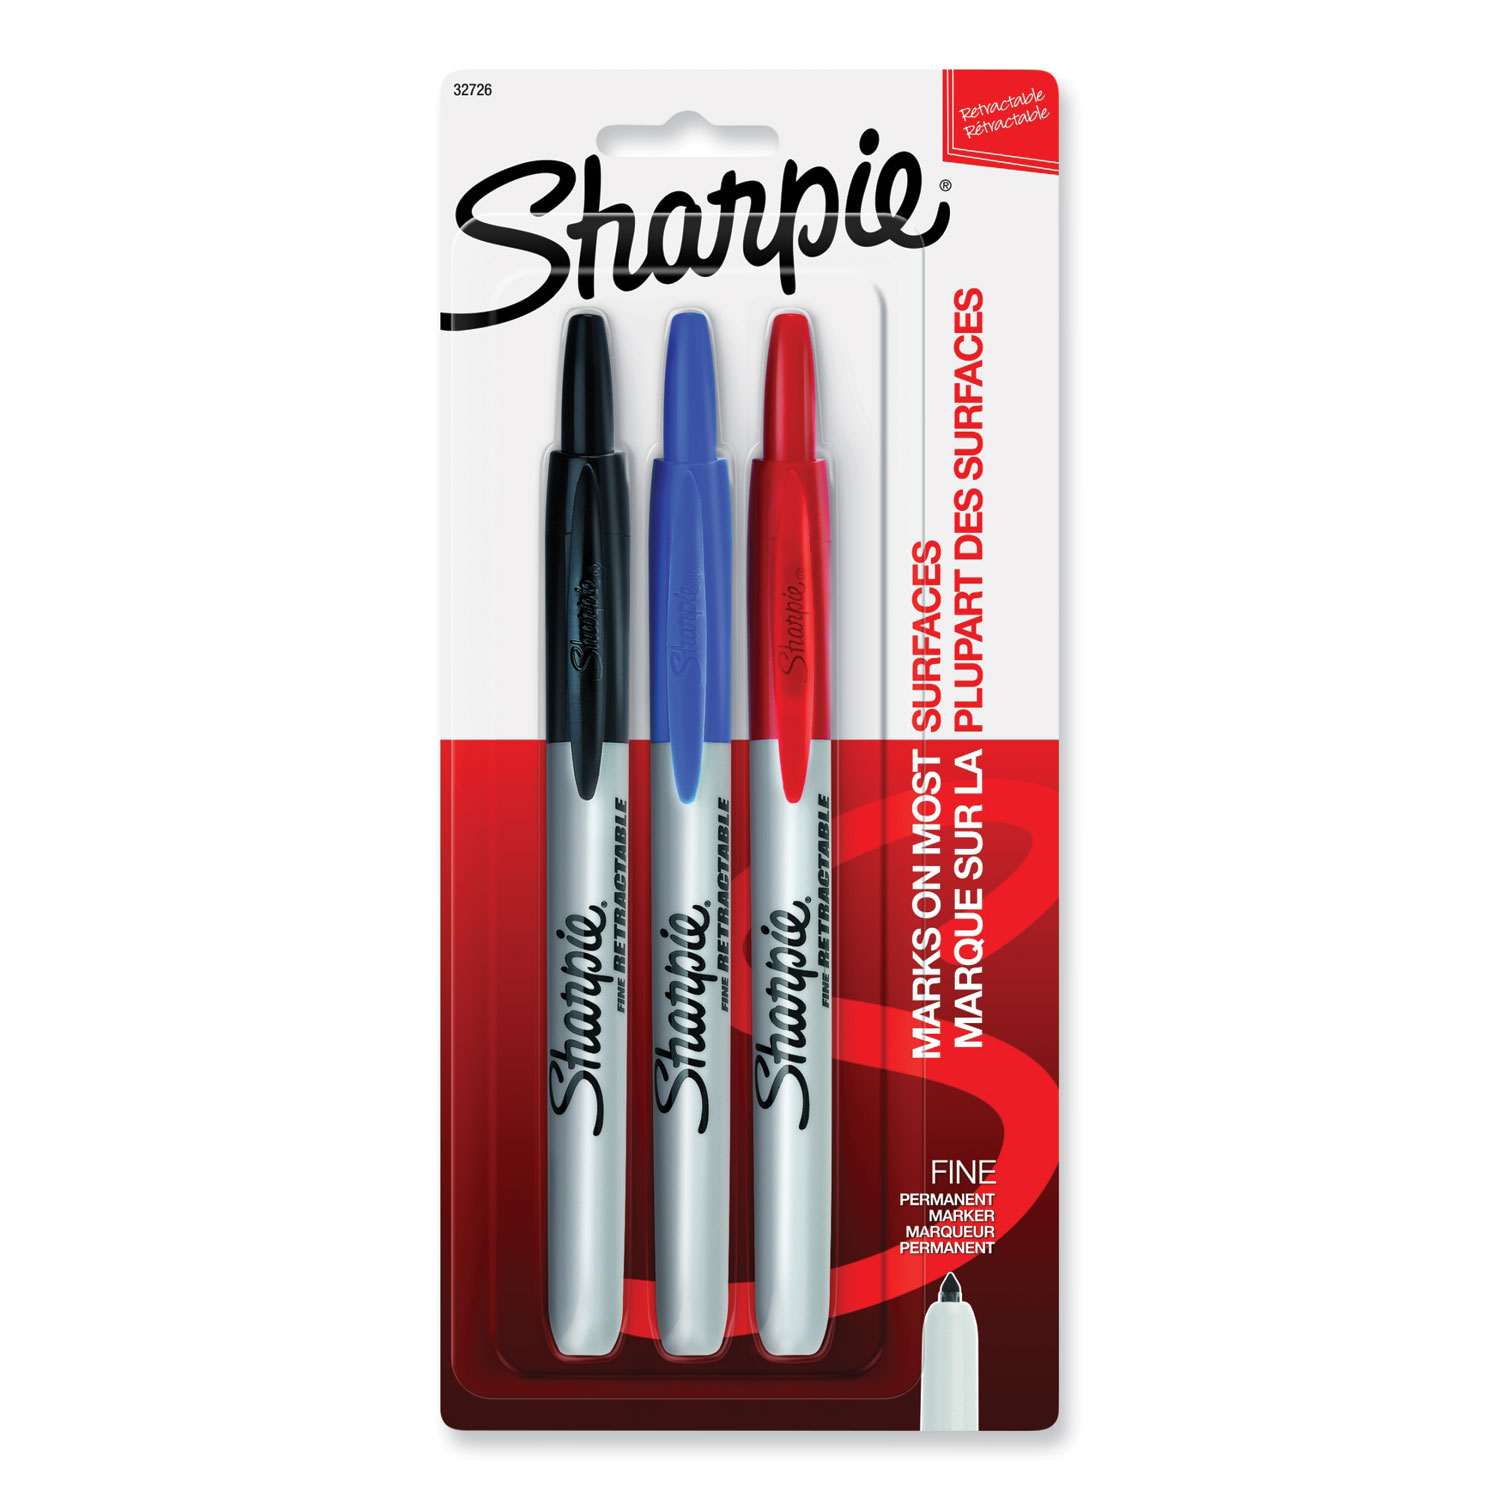 Sharpie Retractable Markers